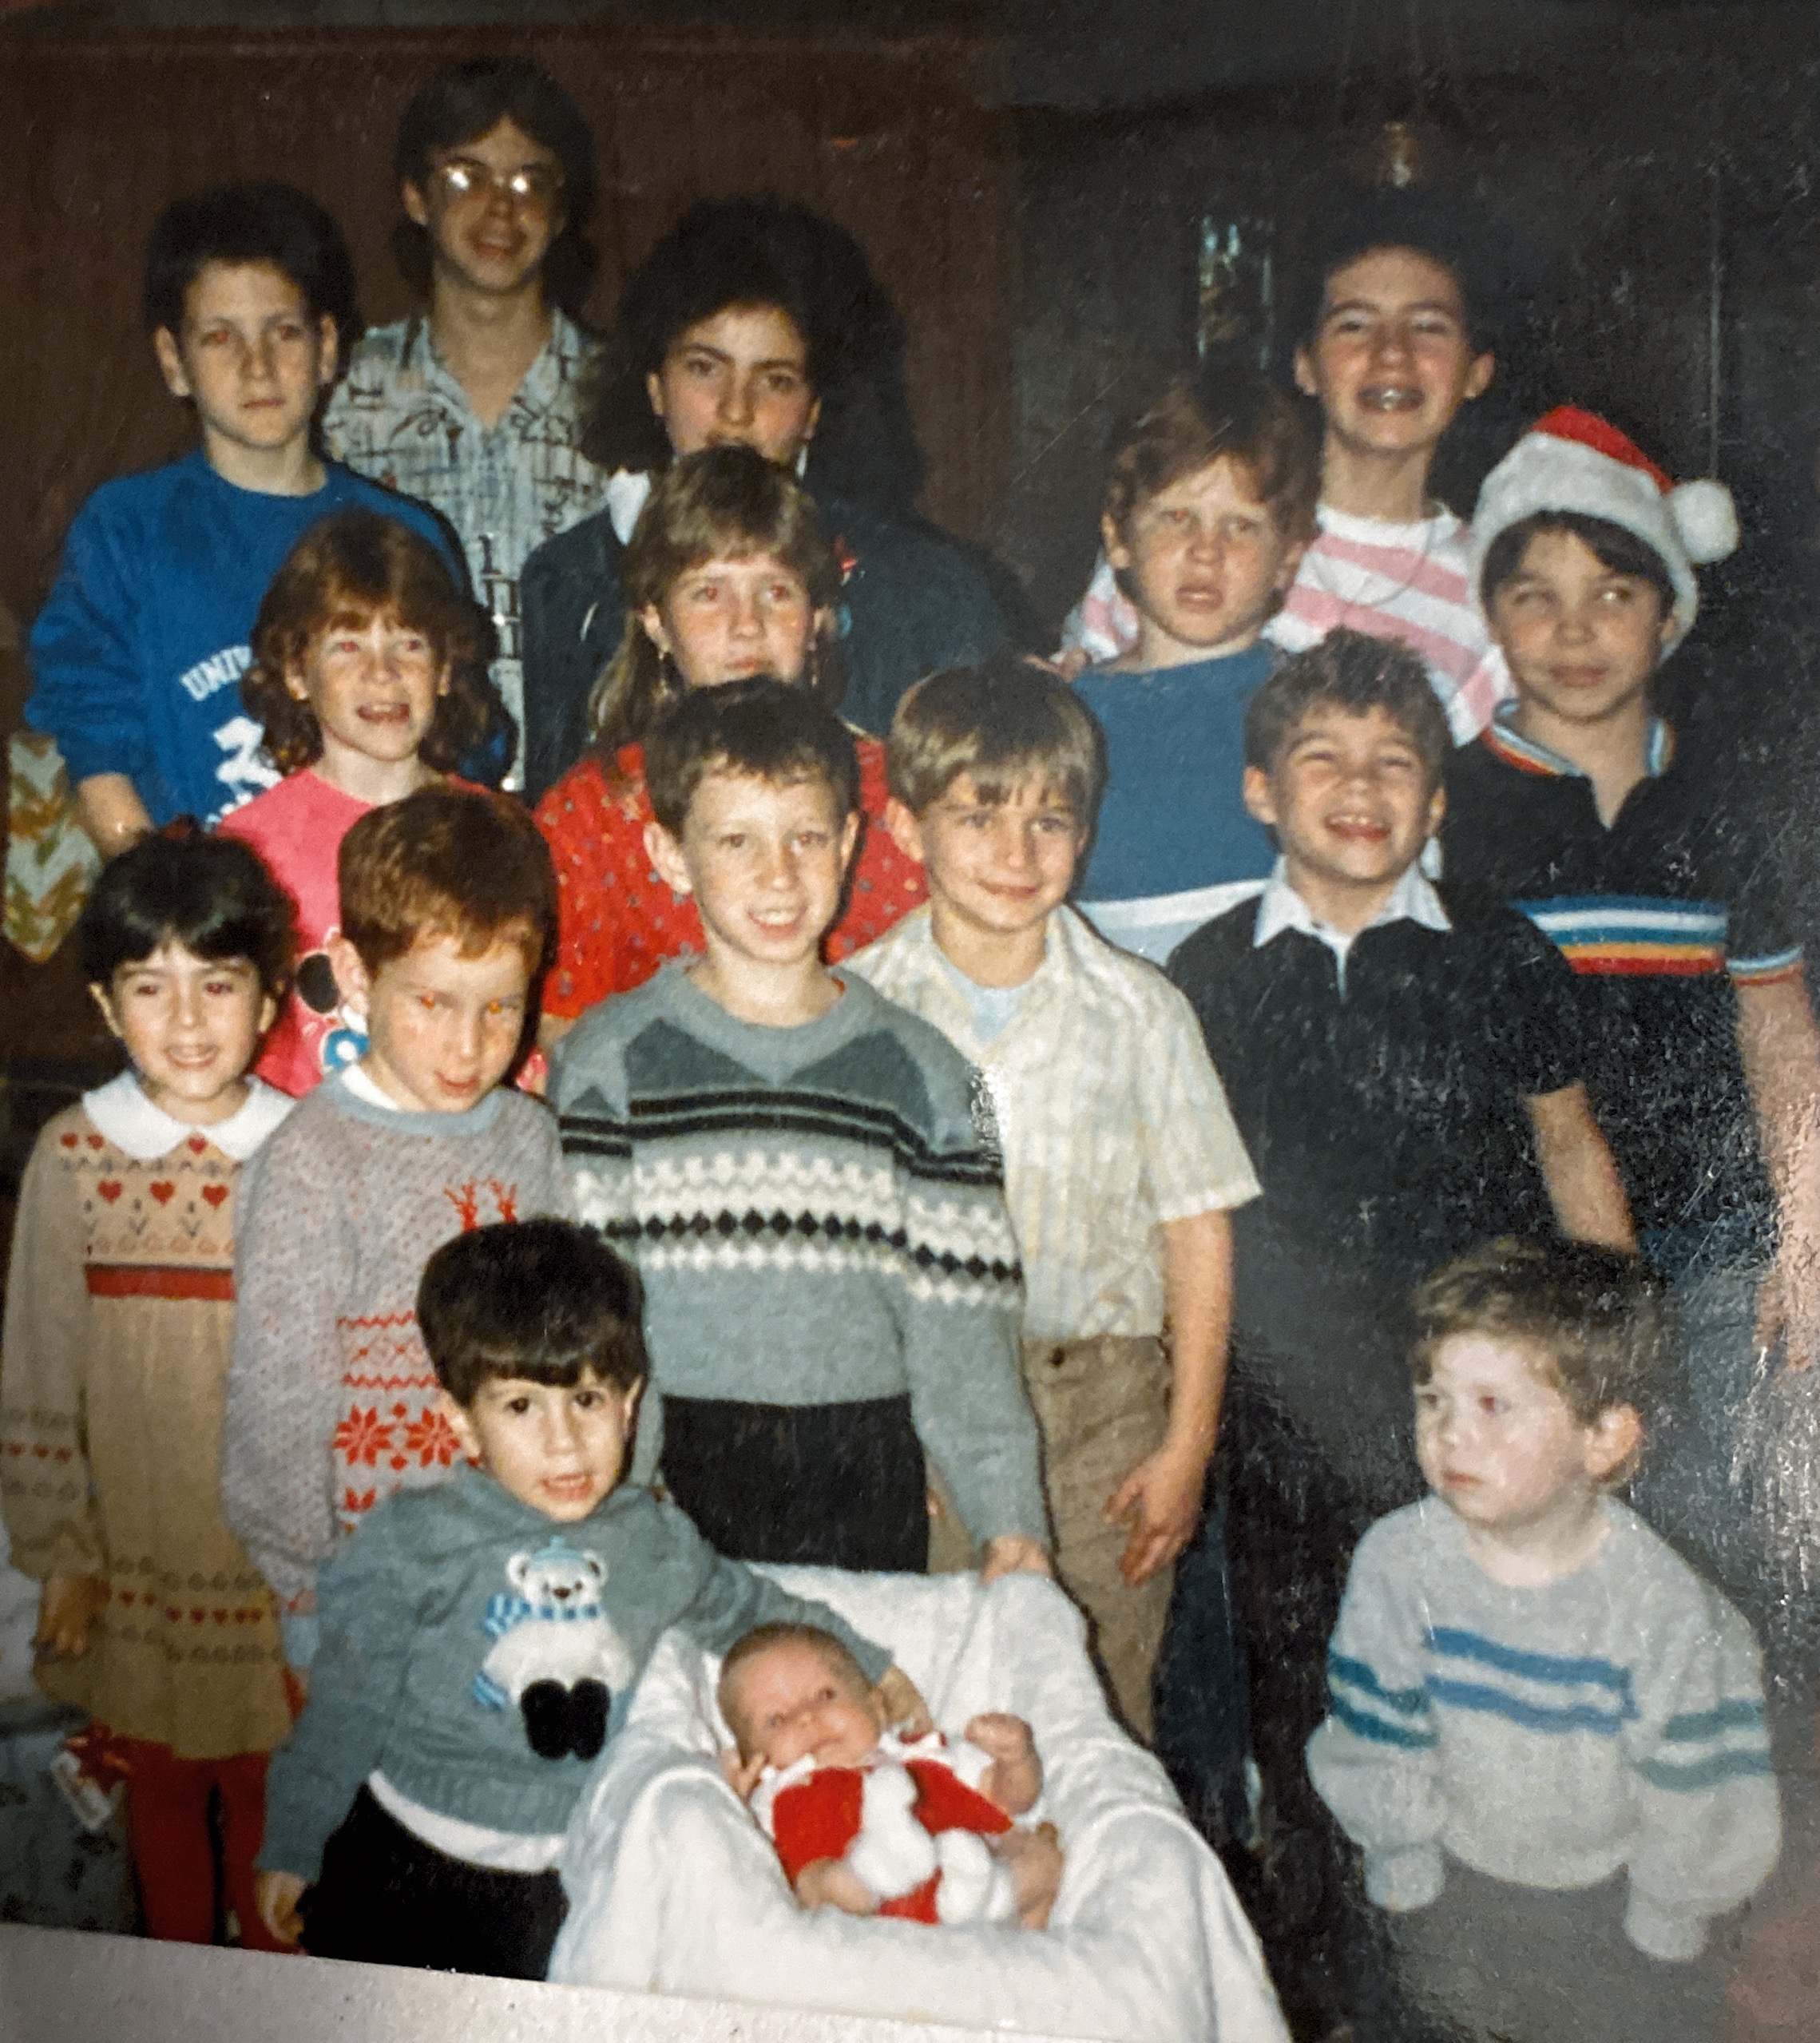 Christmas Eve 1986